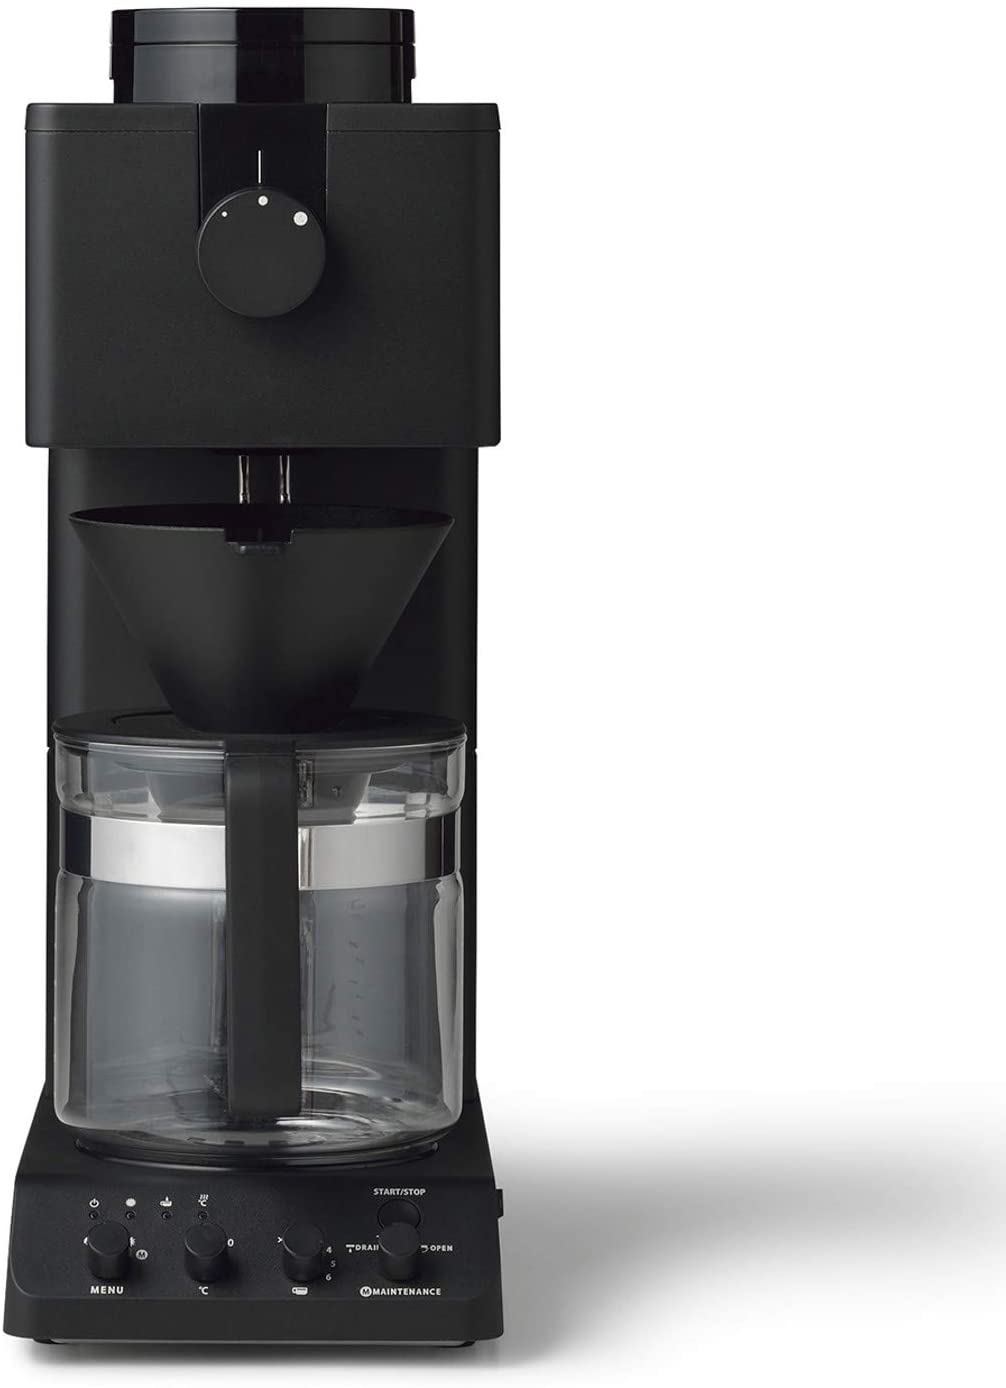 ツインバード 全自動コーヒーメーカー CM-D465B 6カップ用 - 買取サービス 全国対応 | ギアモール